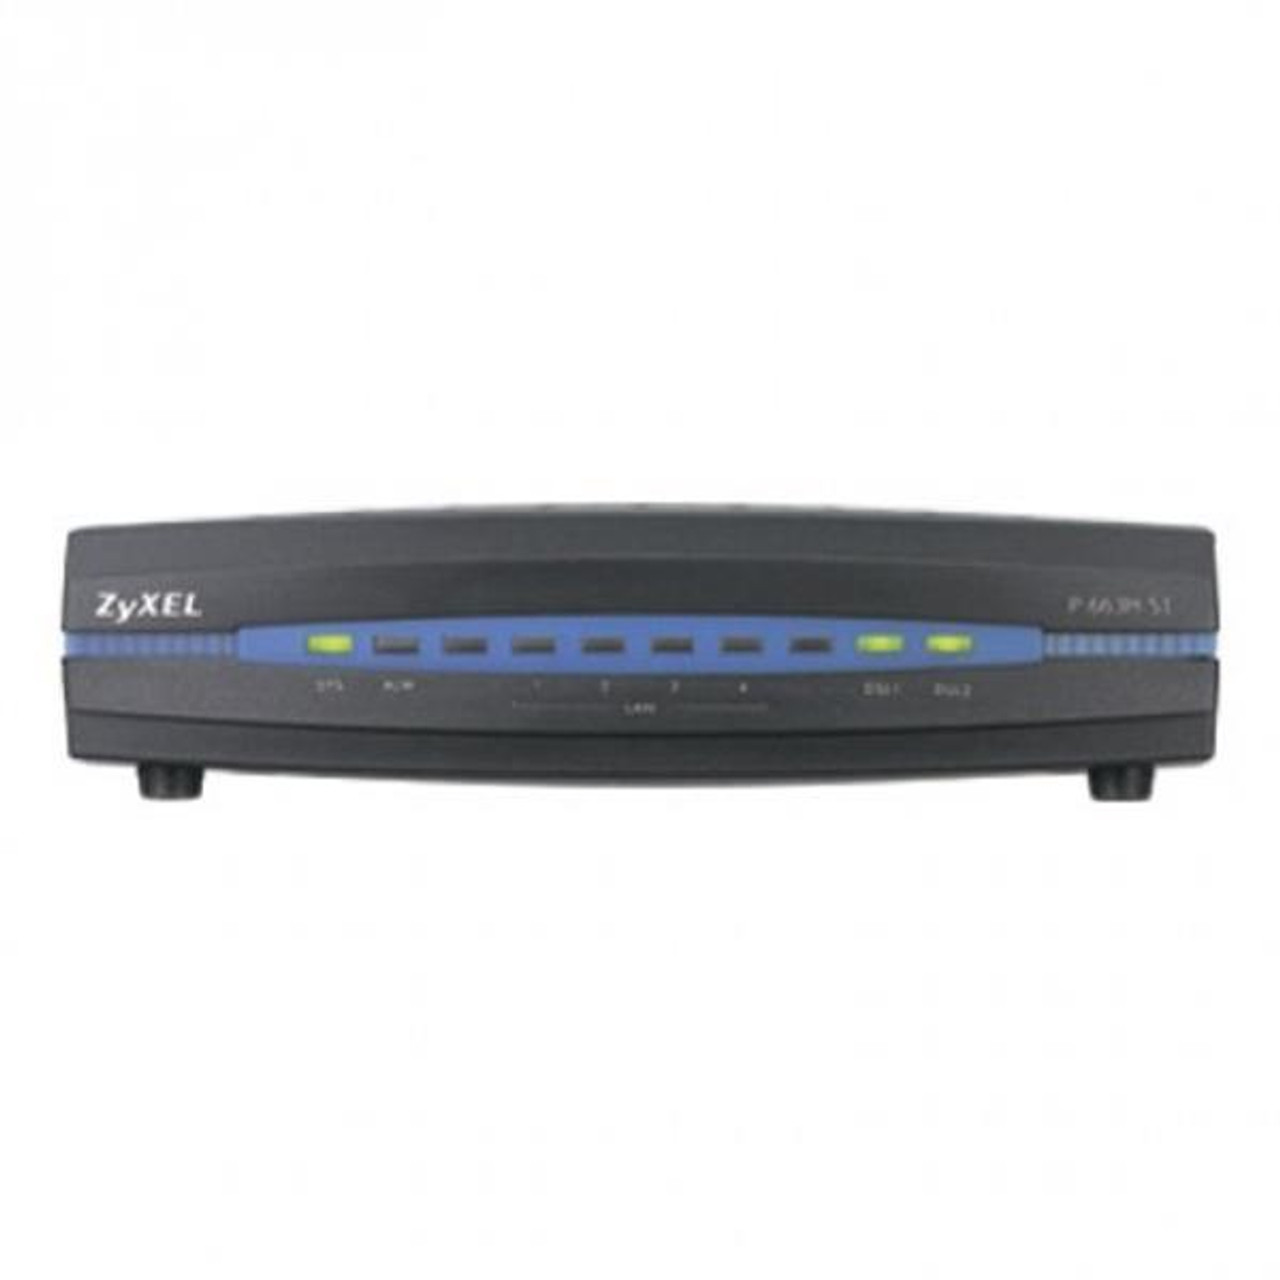 P663H51 Zyxel ADSL2+ Bonded 4-port Router 1 x ADSL WAN, 4 x 10/100Base-TX LAN (Refurbished)